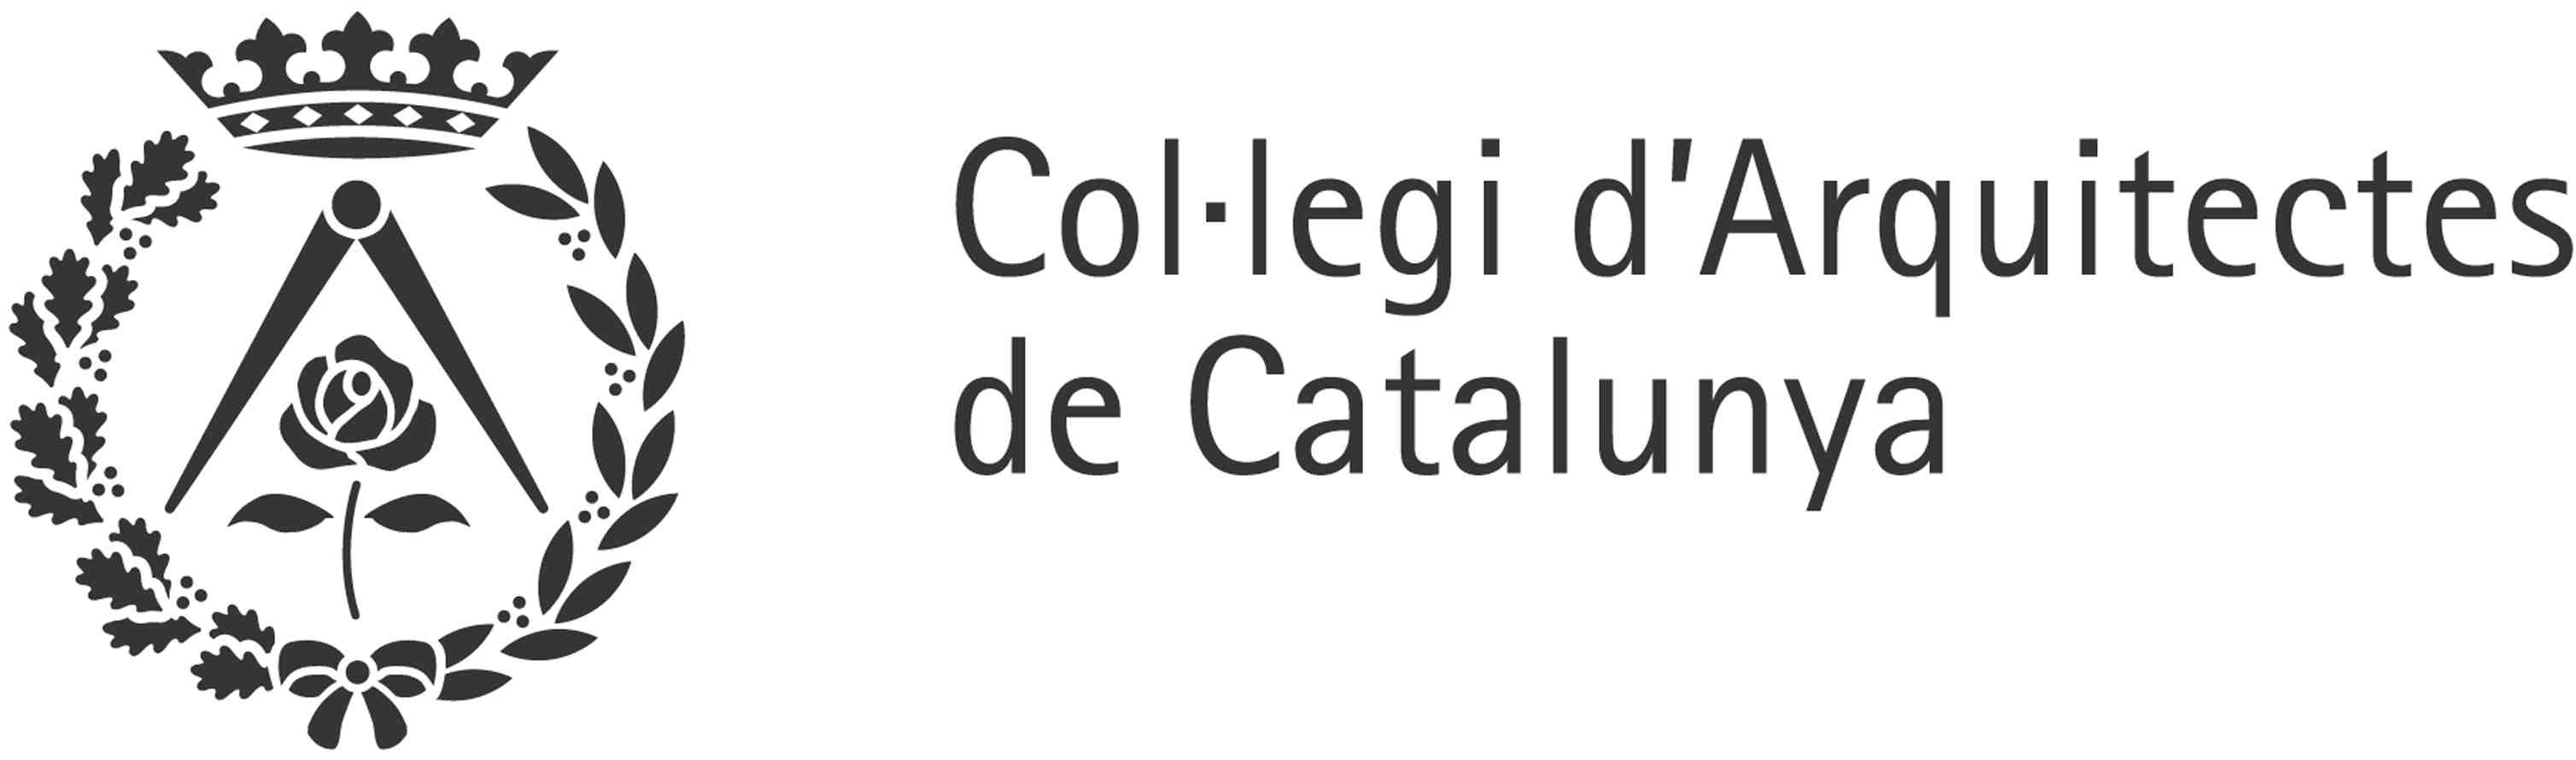 Col.legi d'Arquitectes de Catalunya